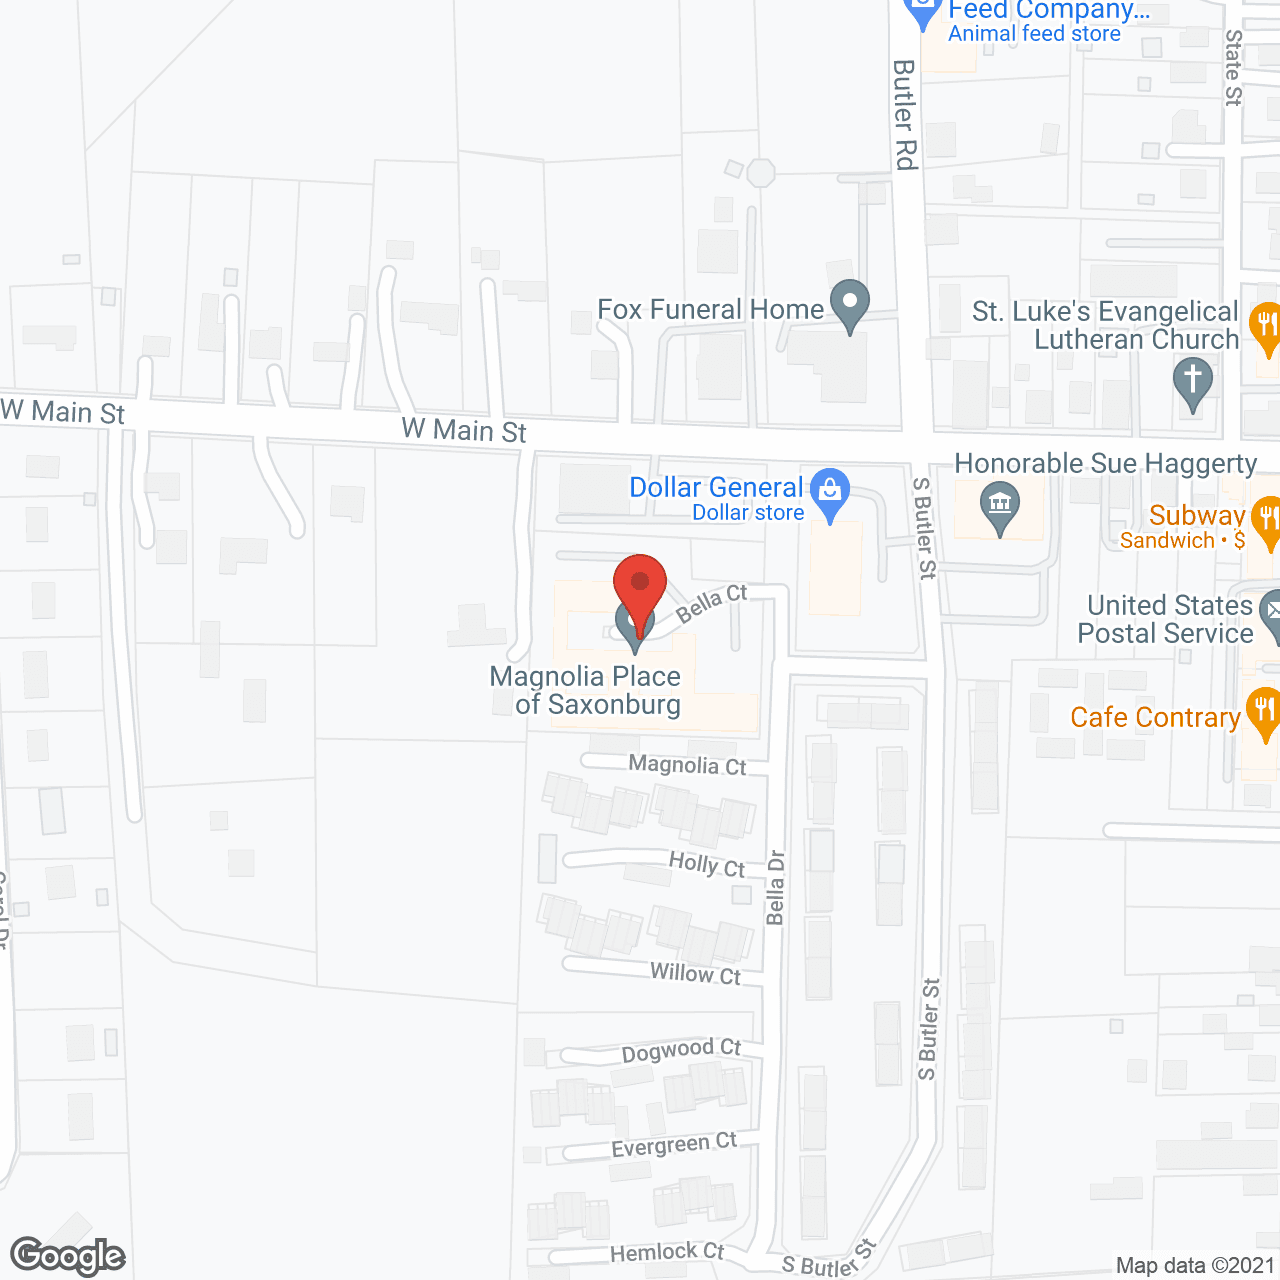 Magnolia Place of Saxonburg in google map